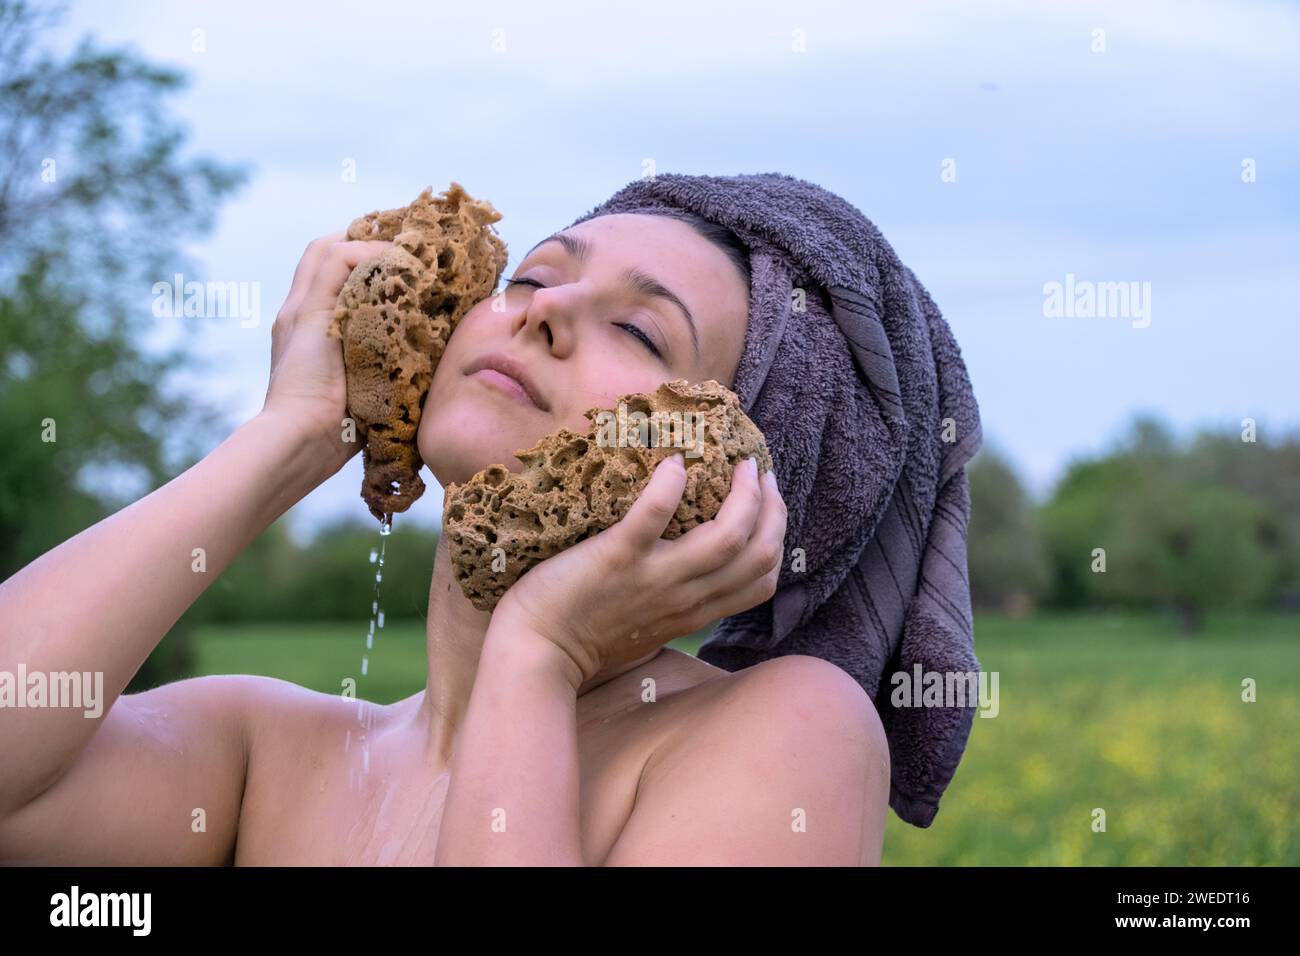 ritratto di una giovane donna nuda sexy e bella con la testa avvolta da un asciugamano, che fa un bagno nel verde prato della natura, lavandosi la testa con una spugna, copiando uno spazio Foto Stock